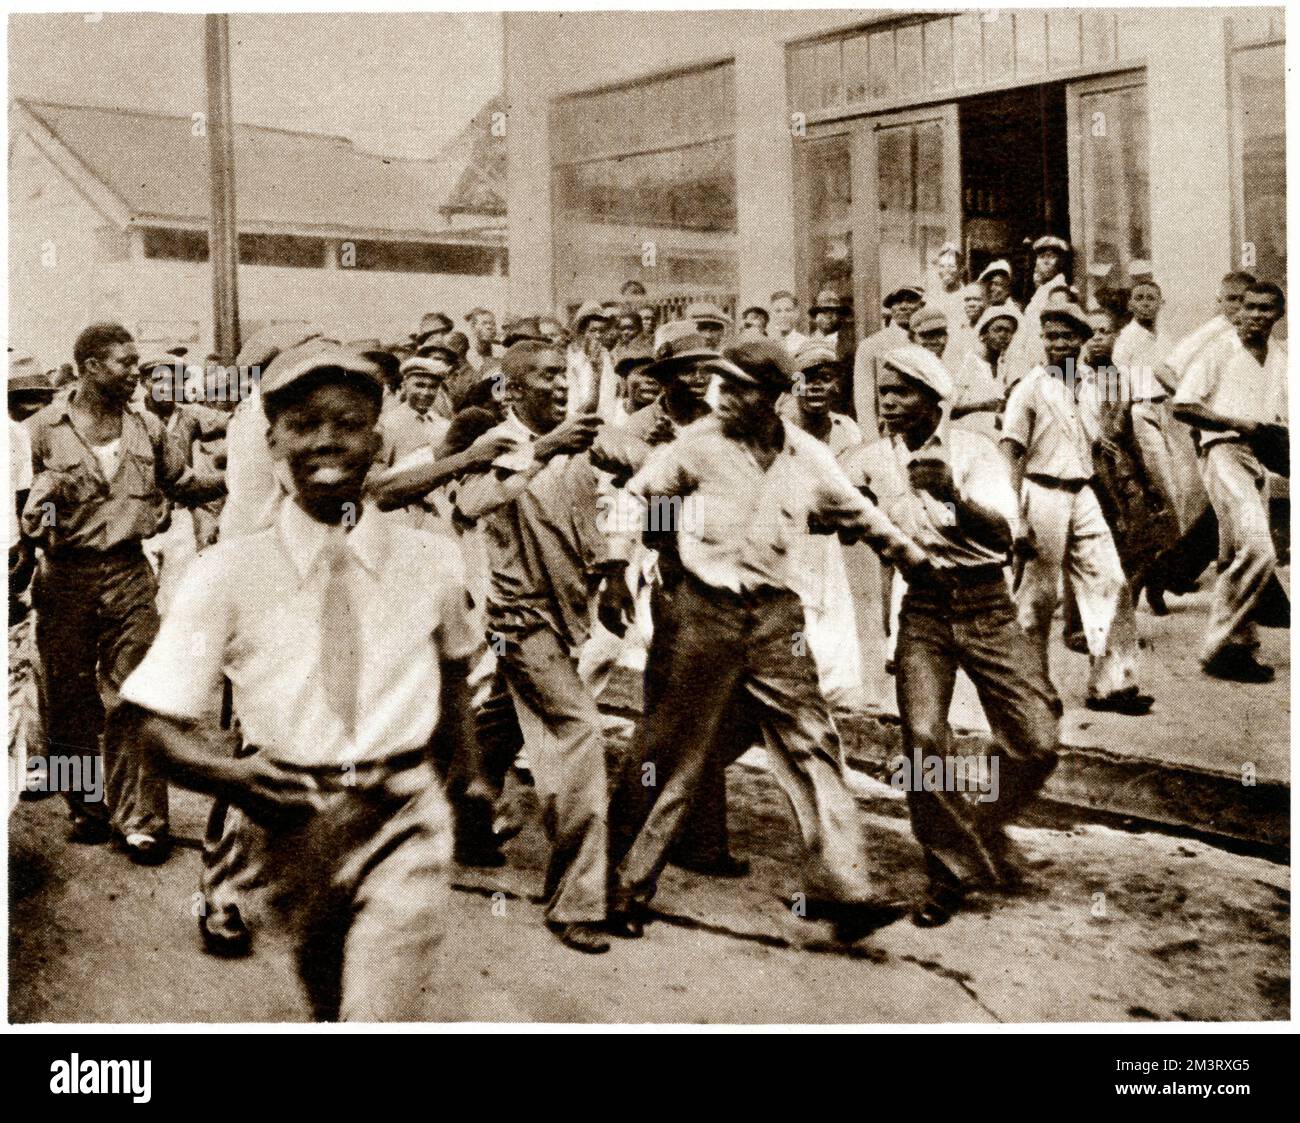 Émeutes en Jamaïque en 1938 à la suite d'une dispute salariale. La photographie montre un chang présumé, accusé d'avoir eu l'intention de casser la grève dans les quais, étant manipulé par d'autres travailleurs. Date: 1938 Banque D'Images